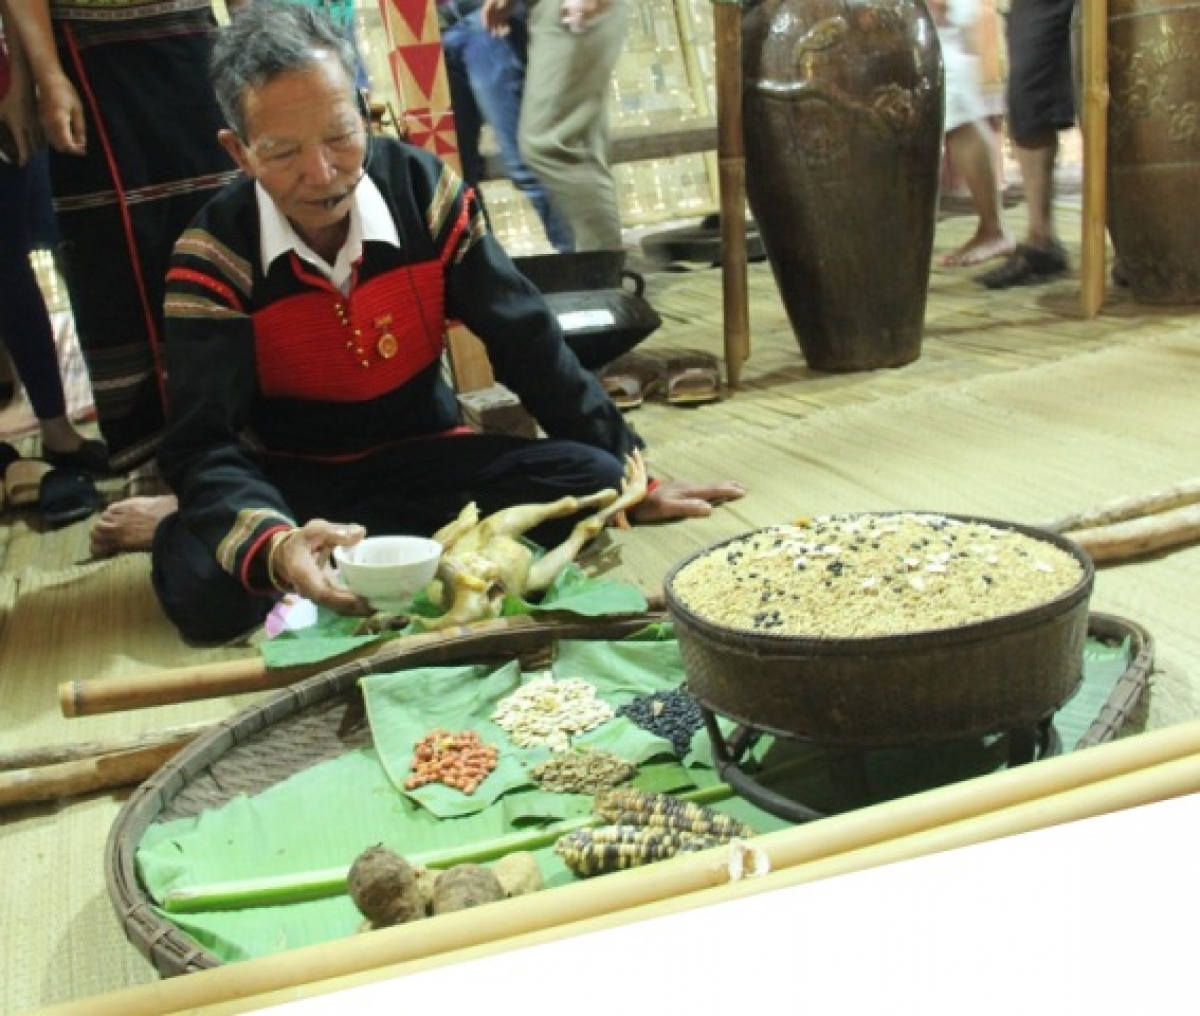 Già A Ma Loan cùng các nghệ nhân người Ê Đê đến từ tỉnh Đắc Lắc tái hiện nghi lễ cúng giống lúa tại làng văn hóa. Ảnh: langvanhoavietnam.vn